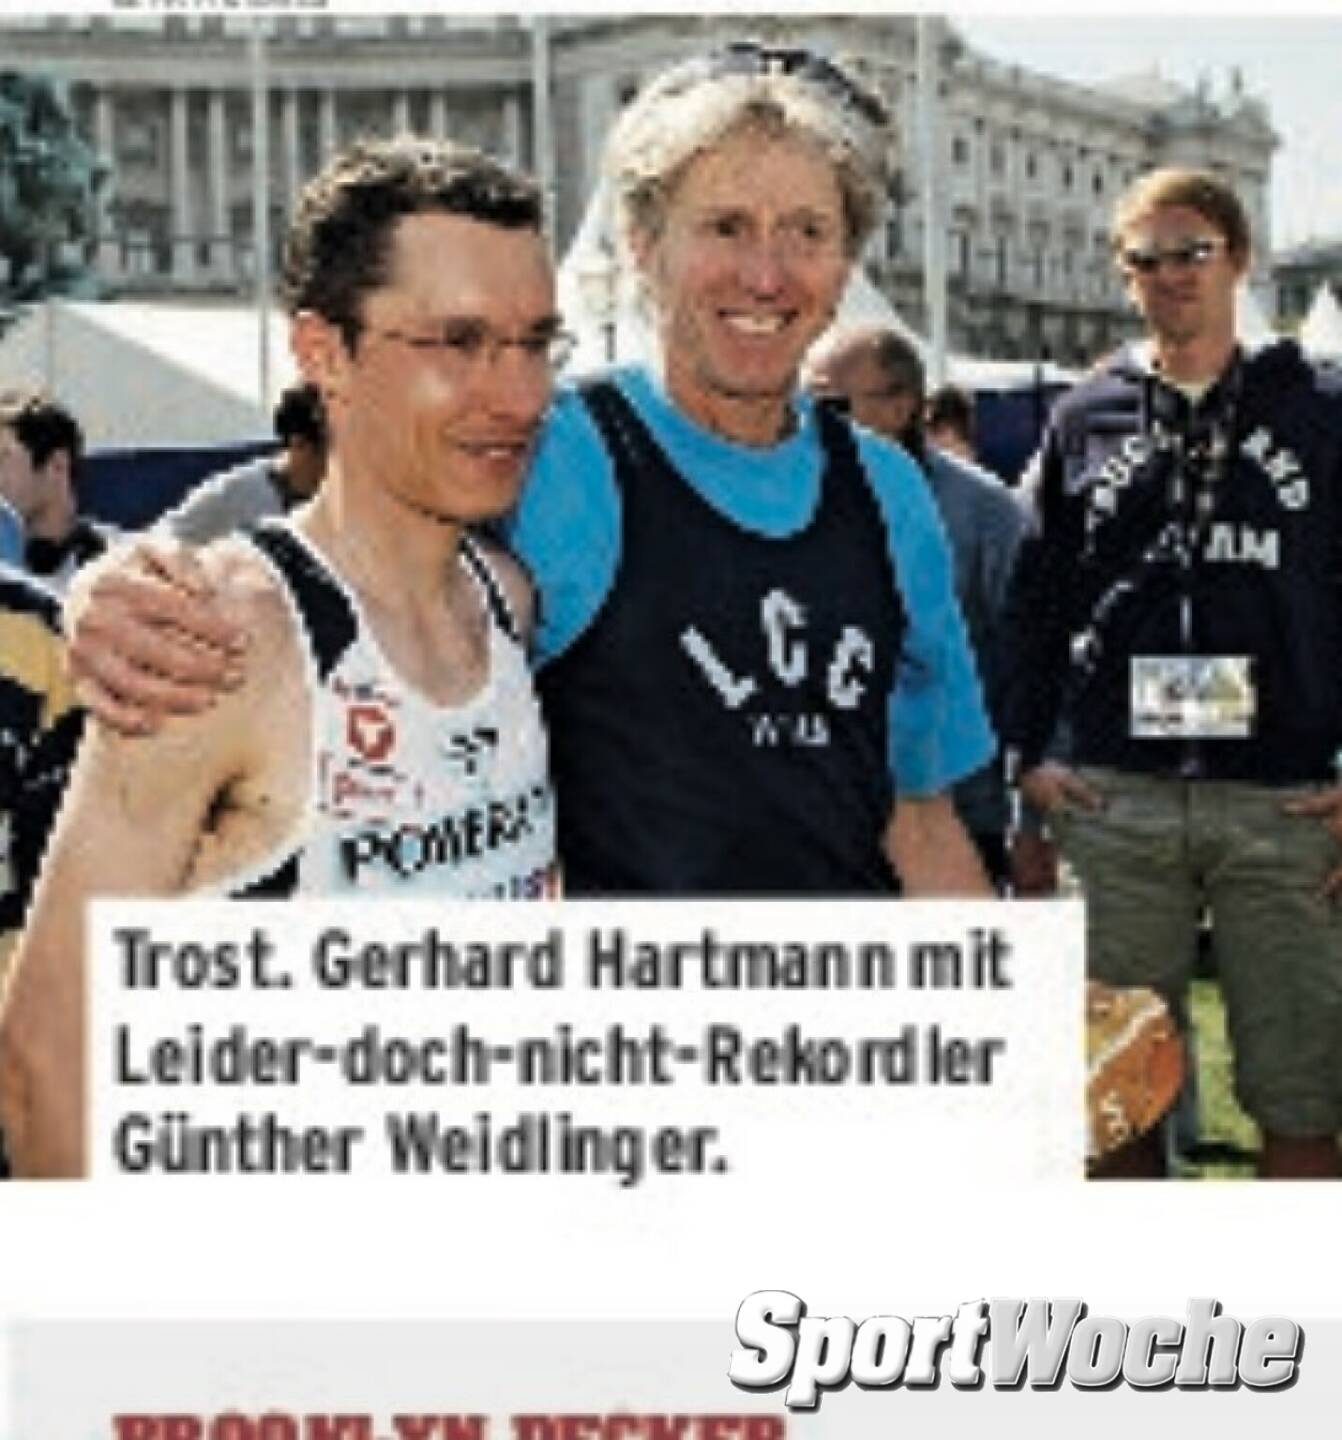 05.04.2022: #gerhardhartmann gewann heute vor 35 Jahren zum 3. Mal in Folge den @vienna_city_marathon . Hier Jahre später in der #sportwoche mit #guentherweidlinger 